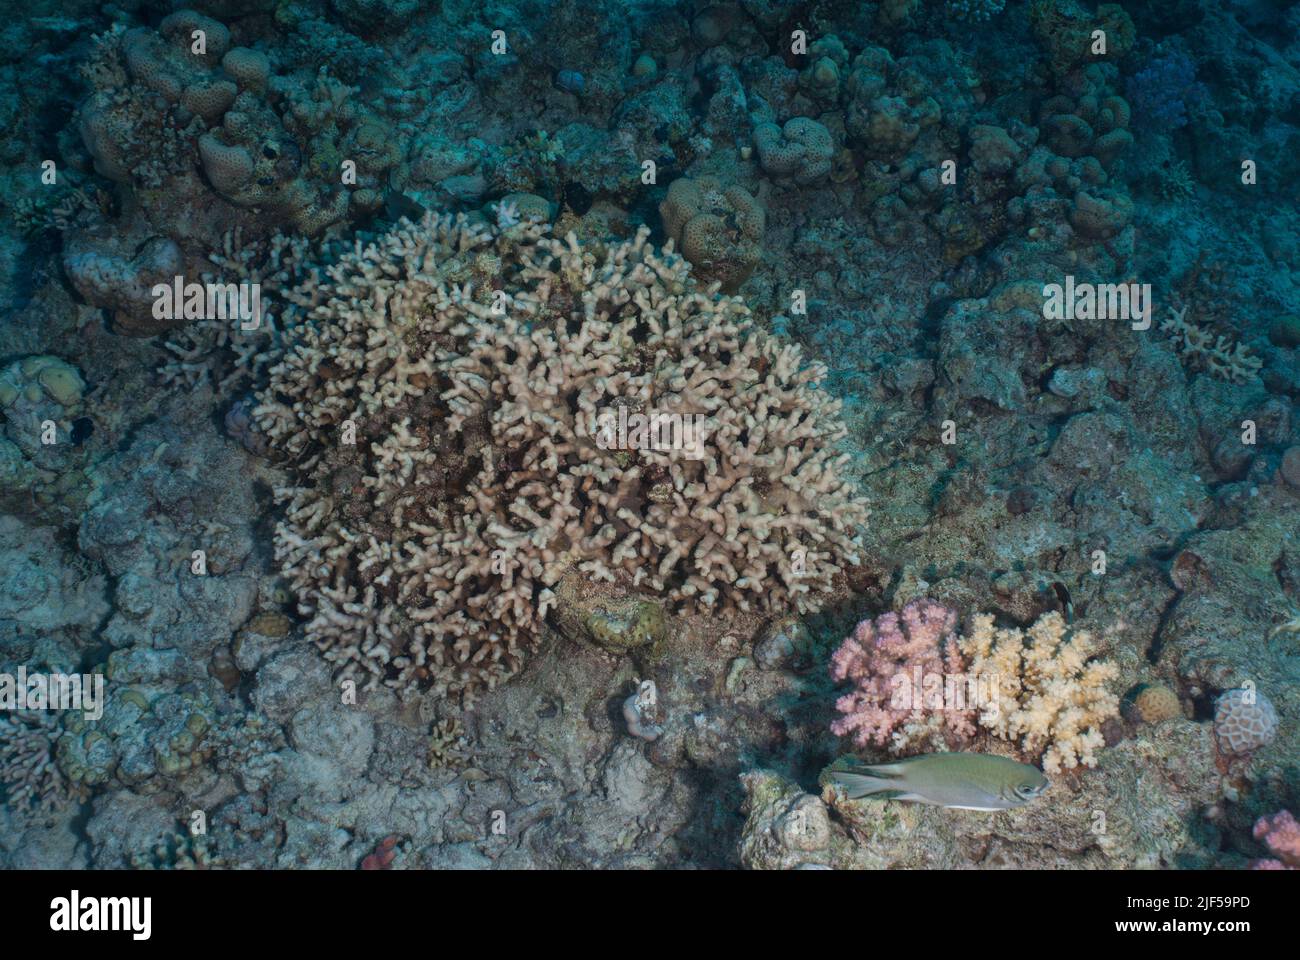 Stony Coral, Acropora maryae, Acroporidae, Sharm el Sheikh Red Sea, Egypt Stock Photo